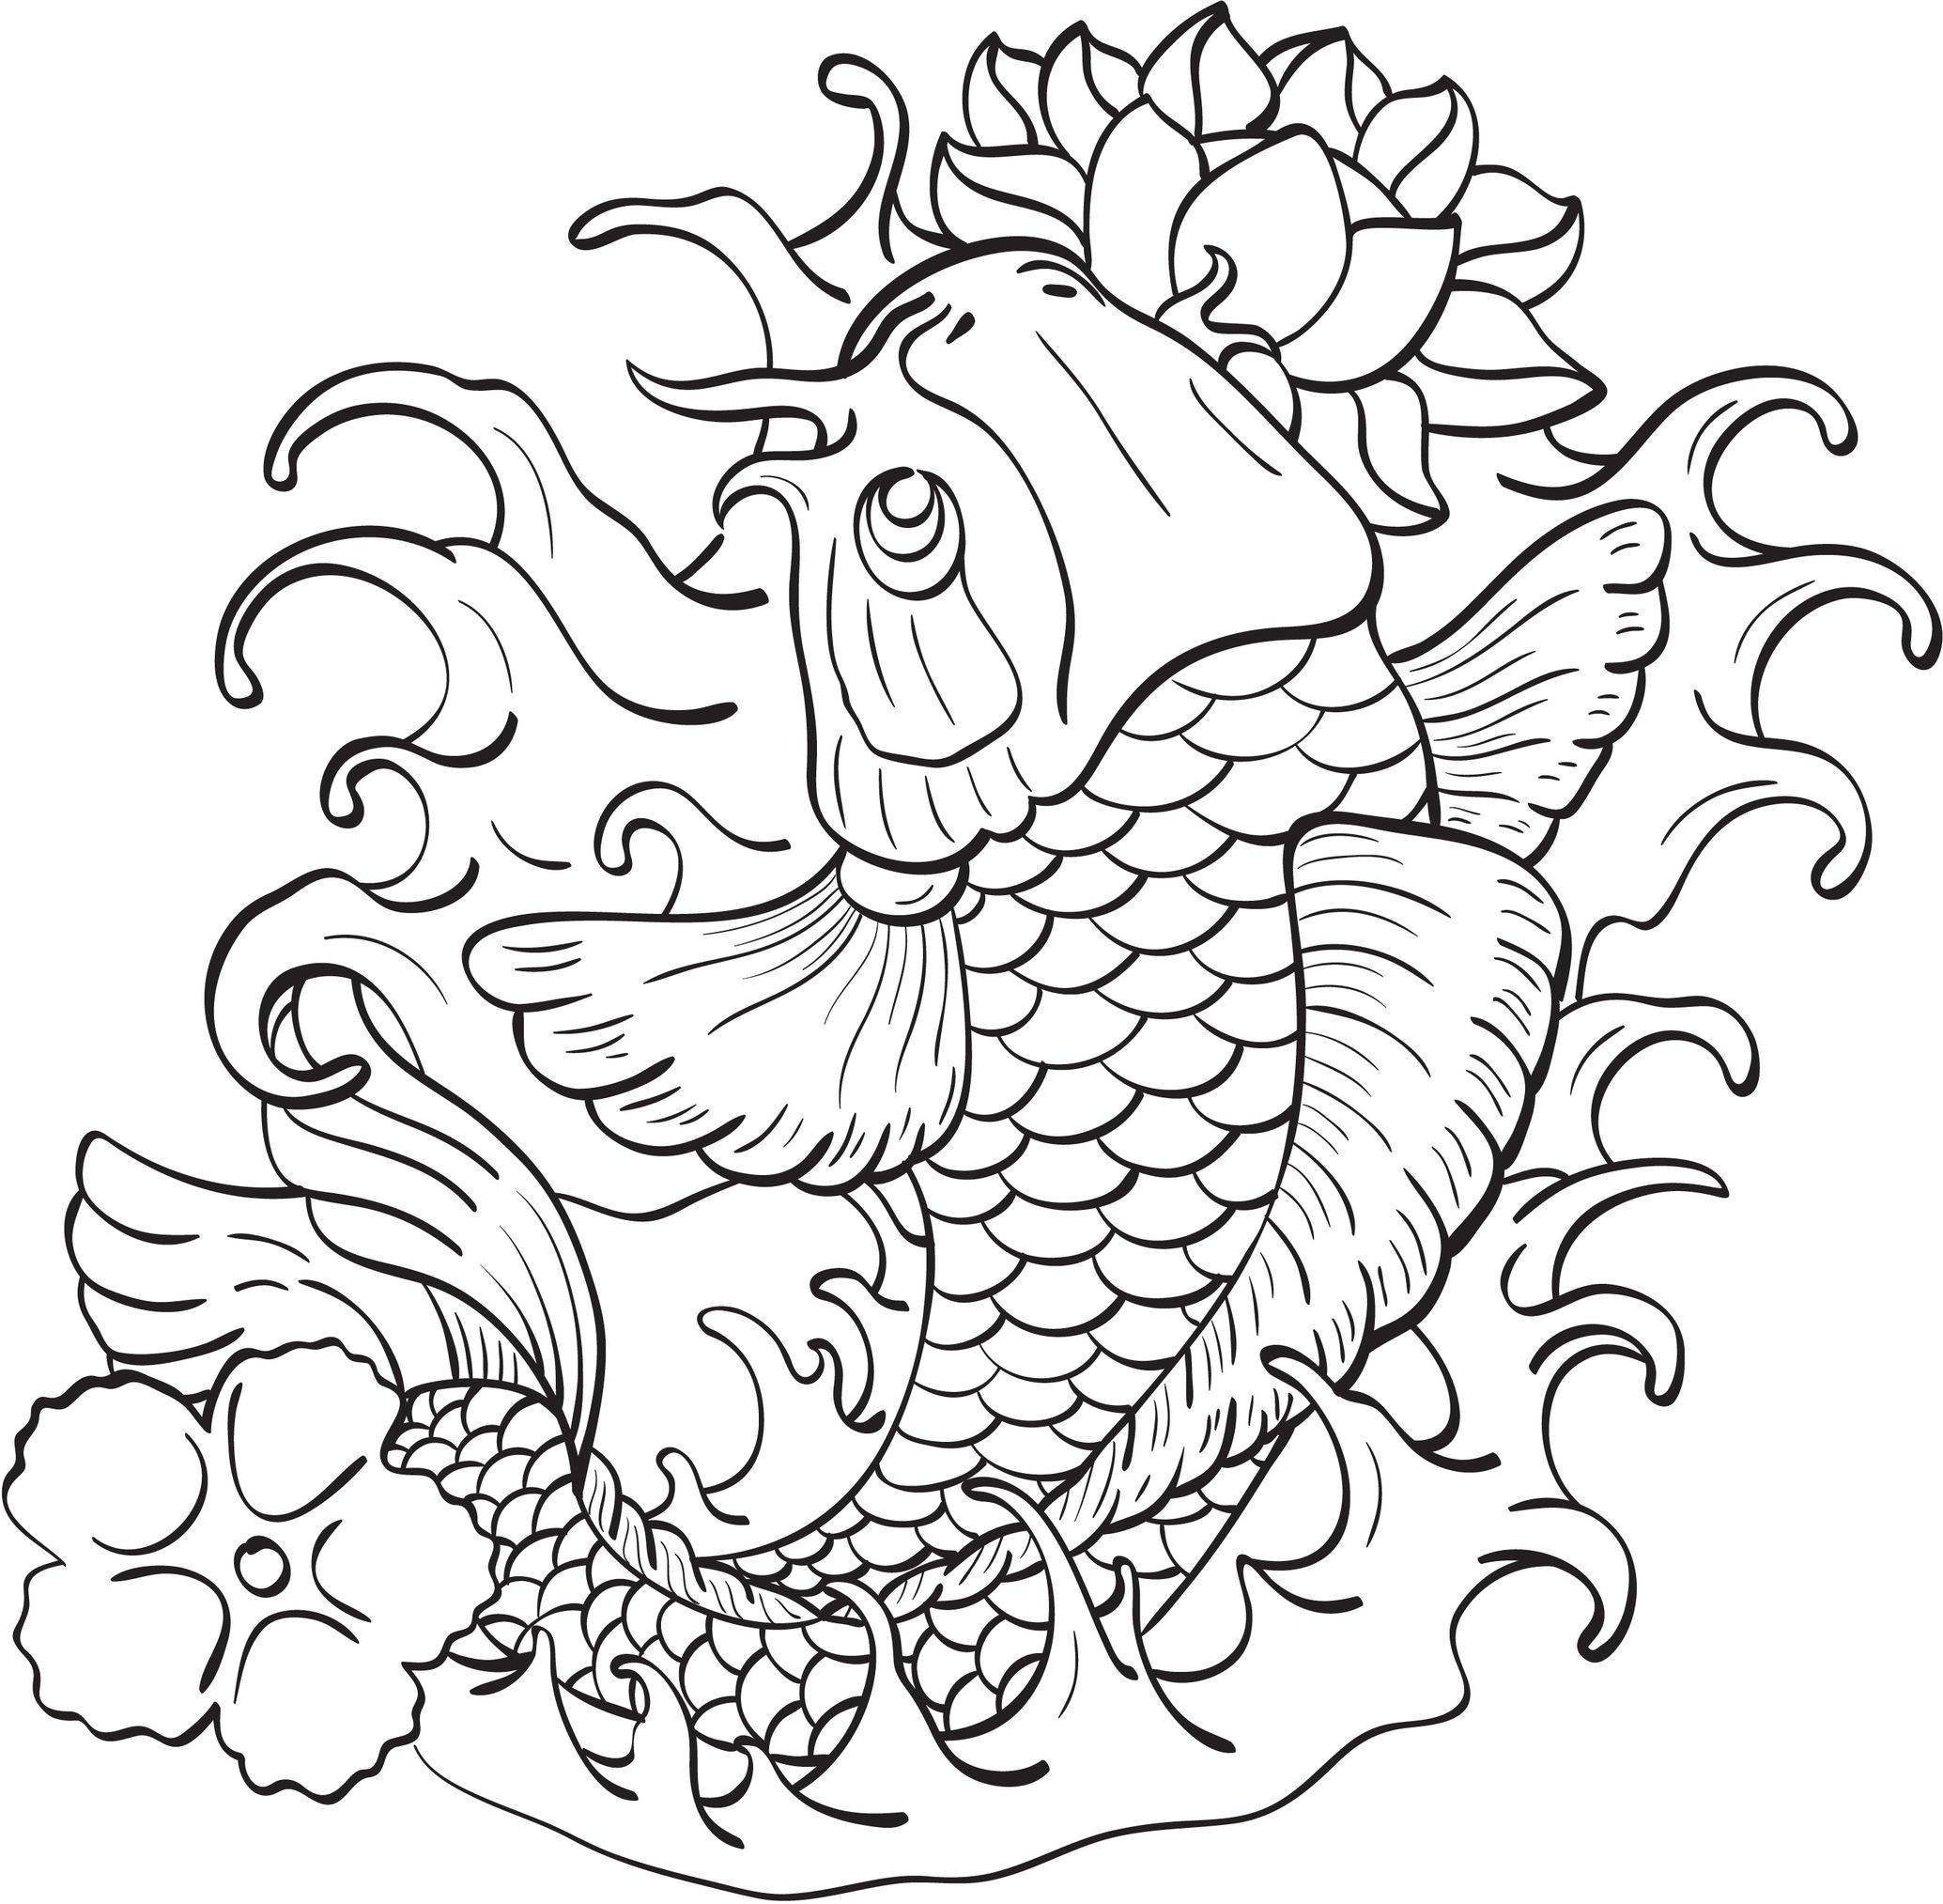 Disegno di Pesce giapponese da colorare